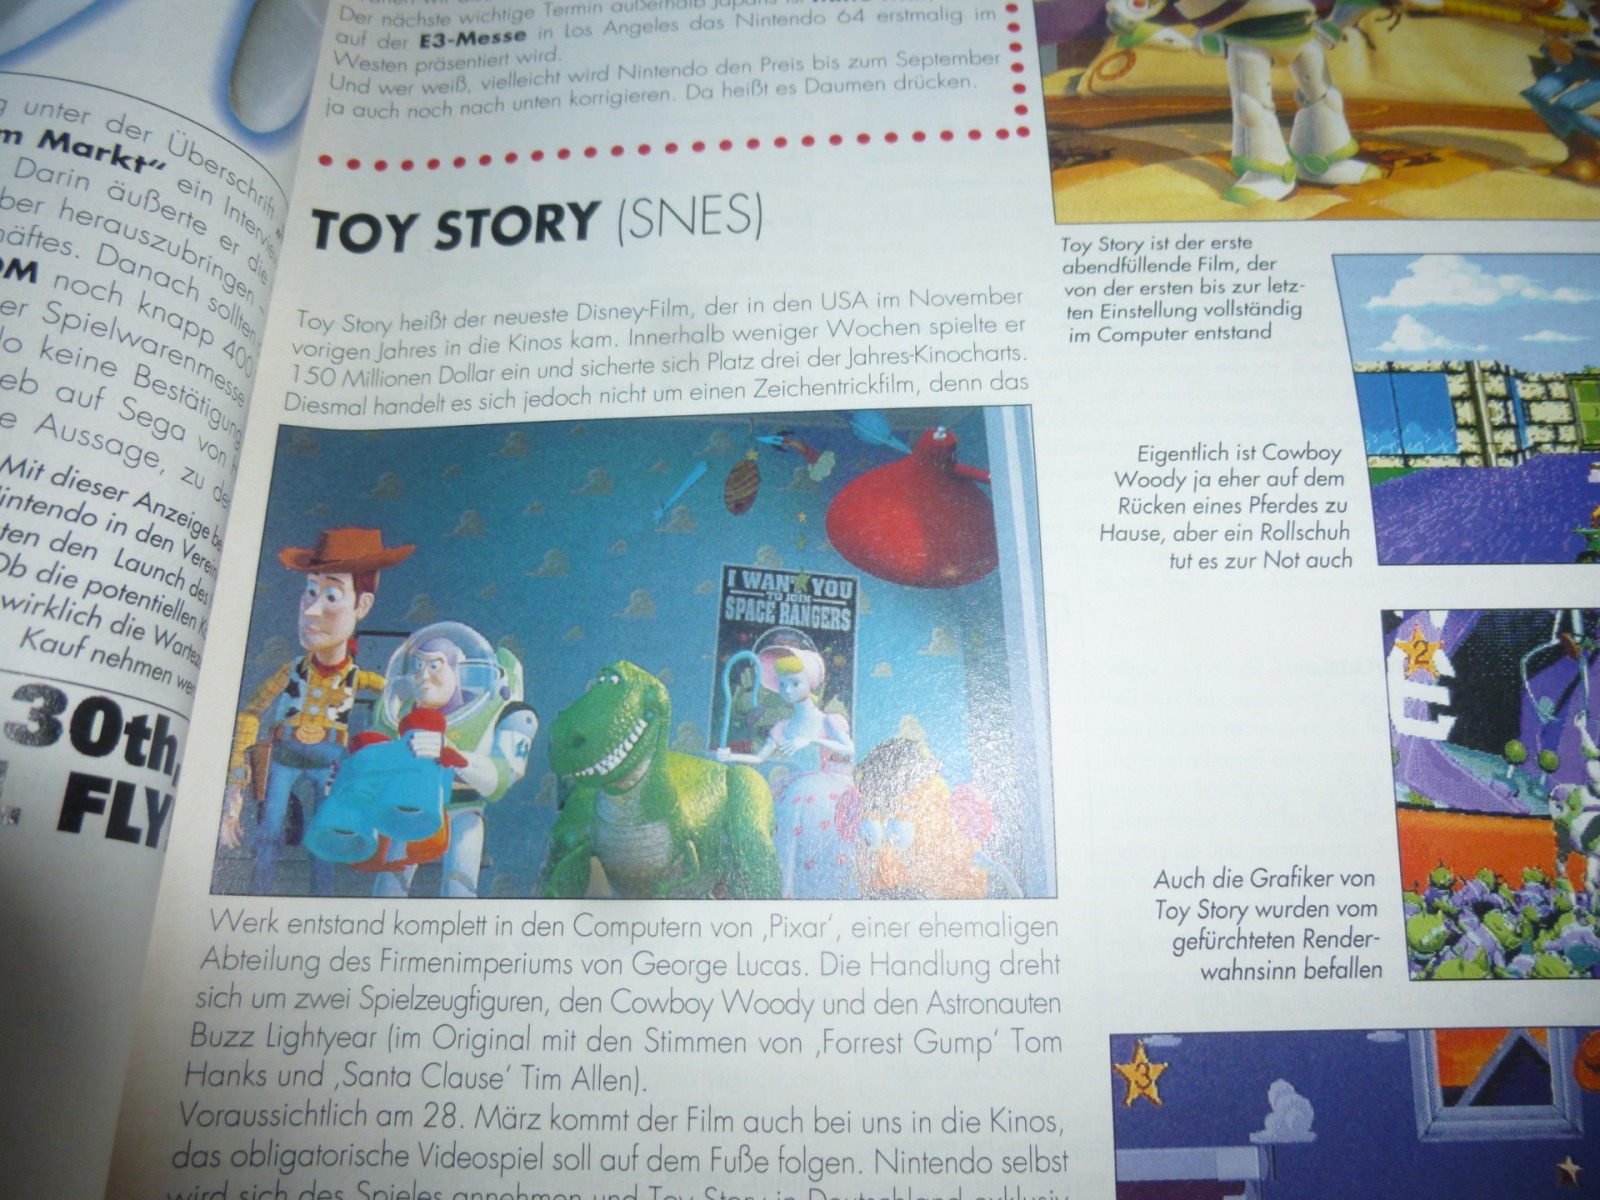 TOTAL Das unabhängige Magazin - 100 Nintendo - Ausgabe 3/96 1996 4